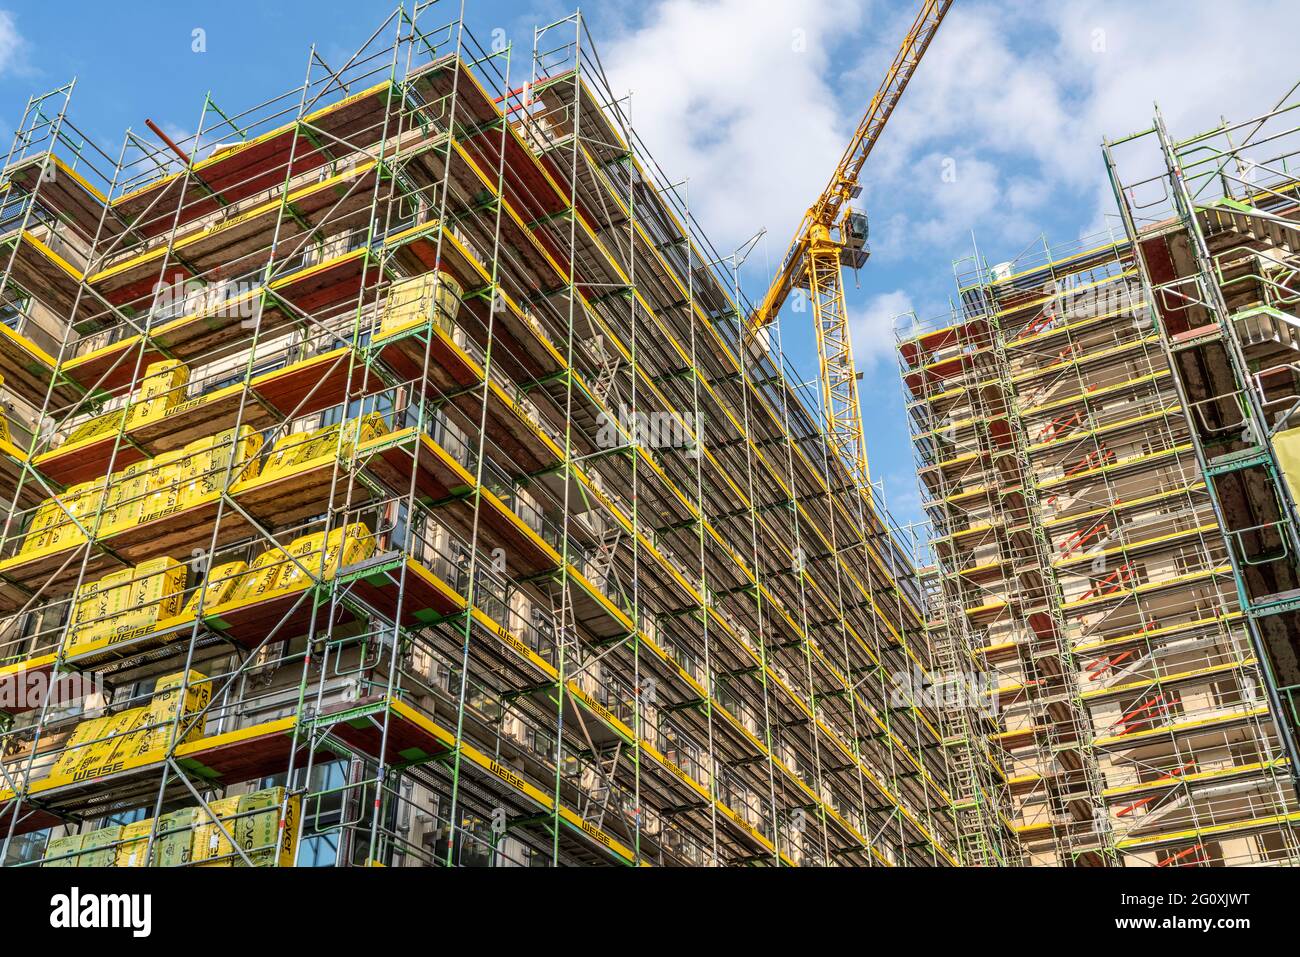 Baustelle eines großen Bauprojekts an der Huyssenallee in Essen, Huyssen Quartier, Wohnhochhaus mit 19 Etagen ein Bürogebäude mit 5 Etagen, eingerüste Stock Photo